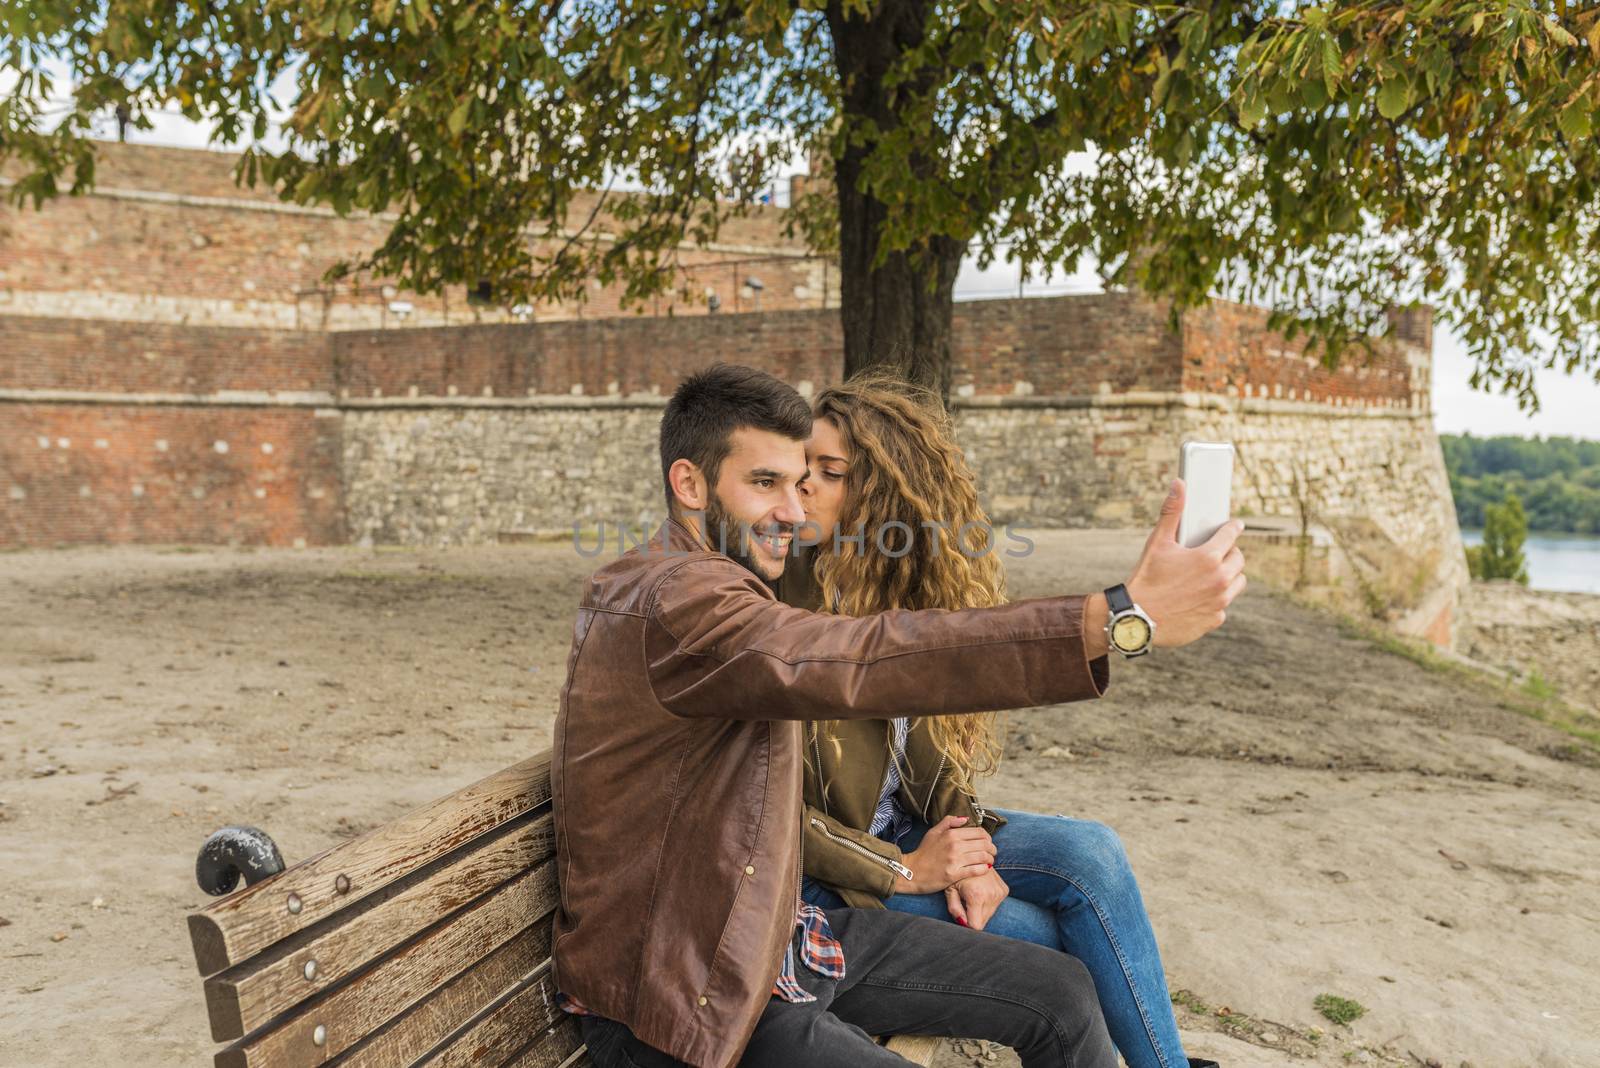 Selfie in the public park by VeraAgency